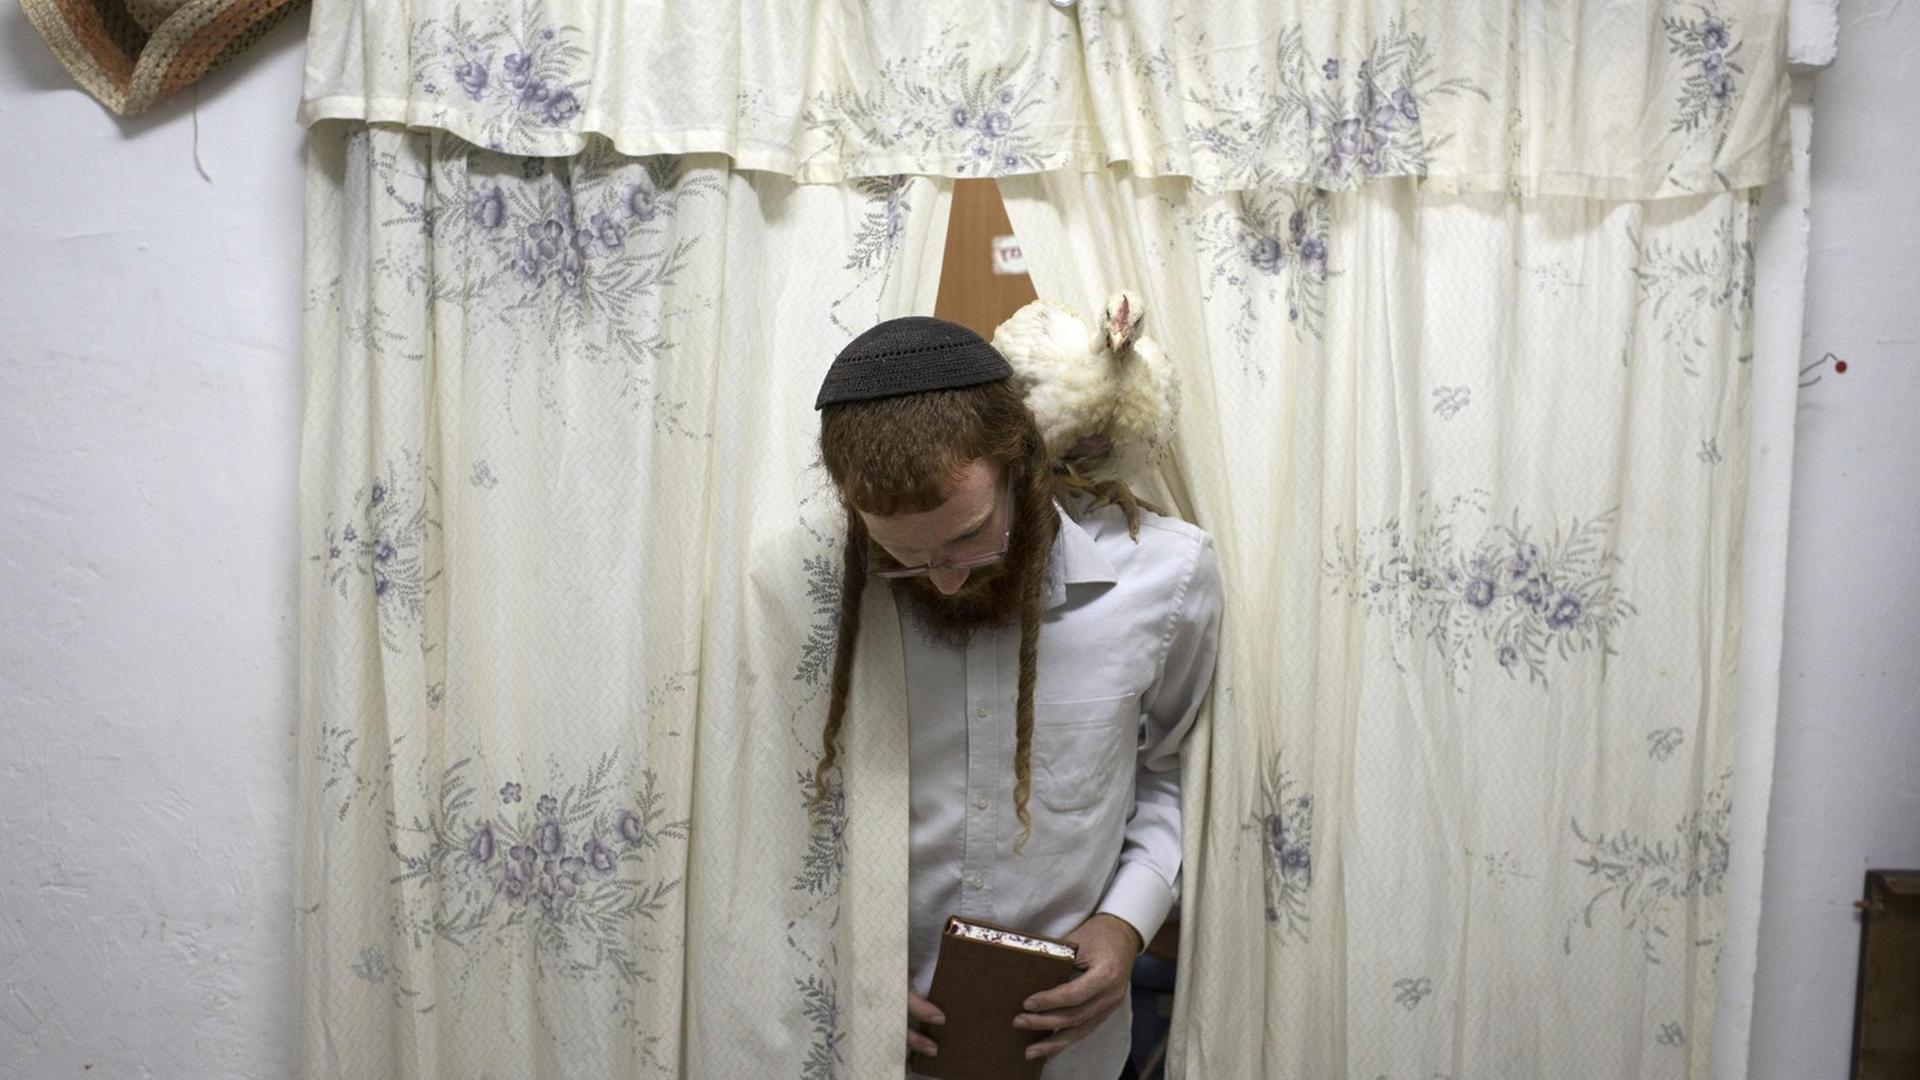 Ein jüdischer Mann mit Kippa und einem Huhn auf der Schulter betritt das Zimmer durch einen geblümten Vorhang.